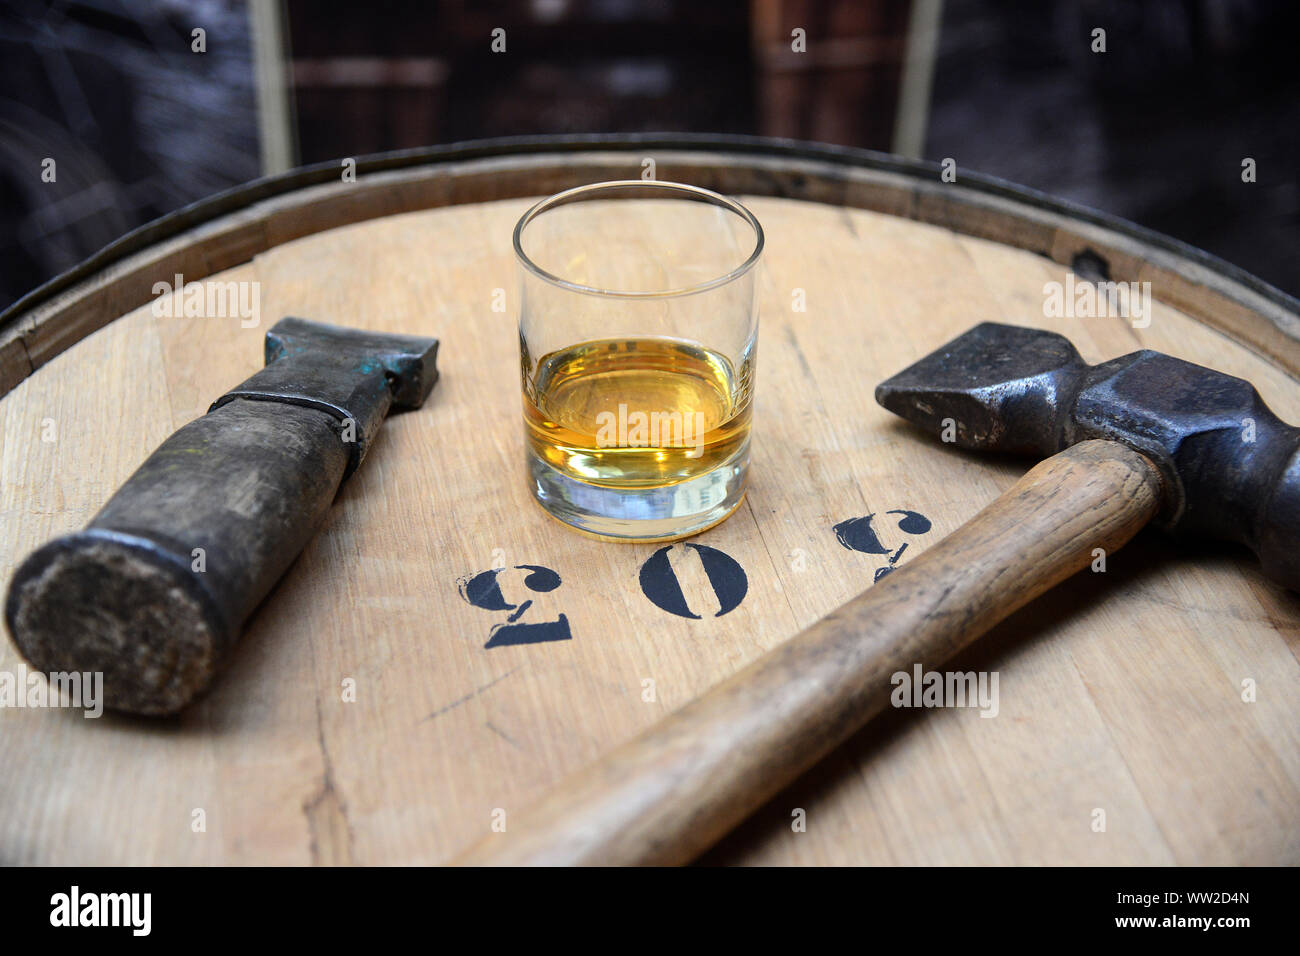 JON SAVAGE PHOTOGRAPHIE UN VERRE DE WHISKY SINGLE HIGHLAND MALT AU-DESSUS D'un fût de whisky Banque D'Images